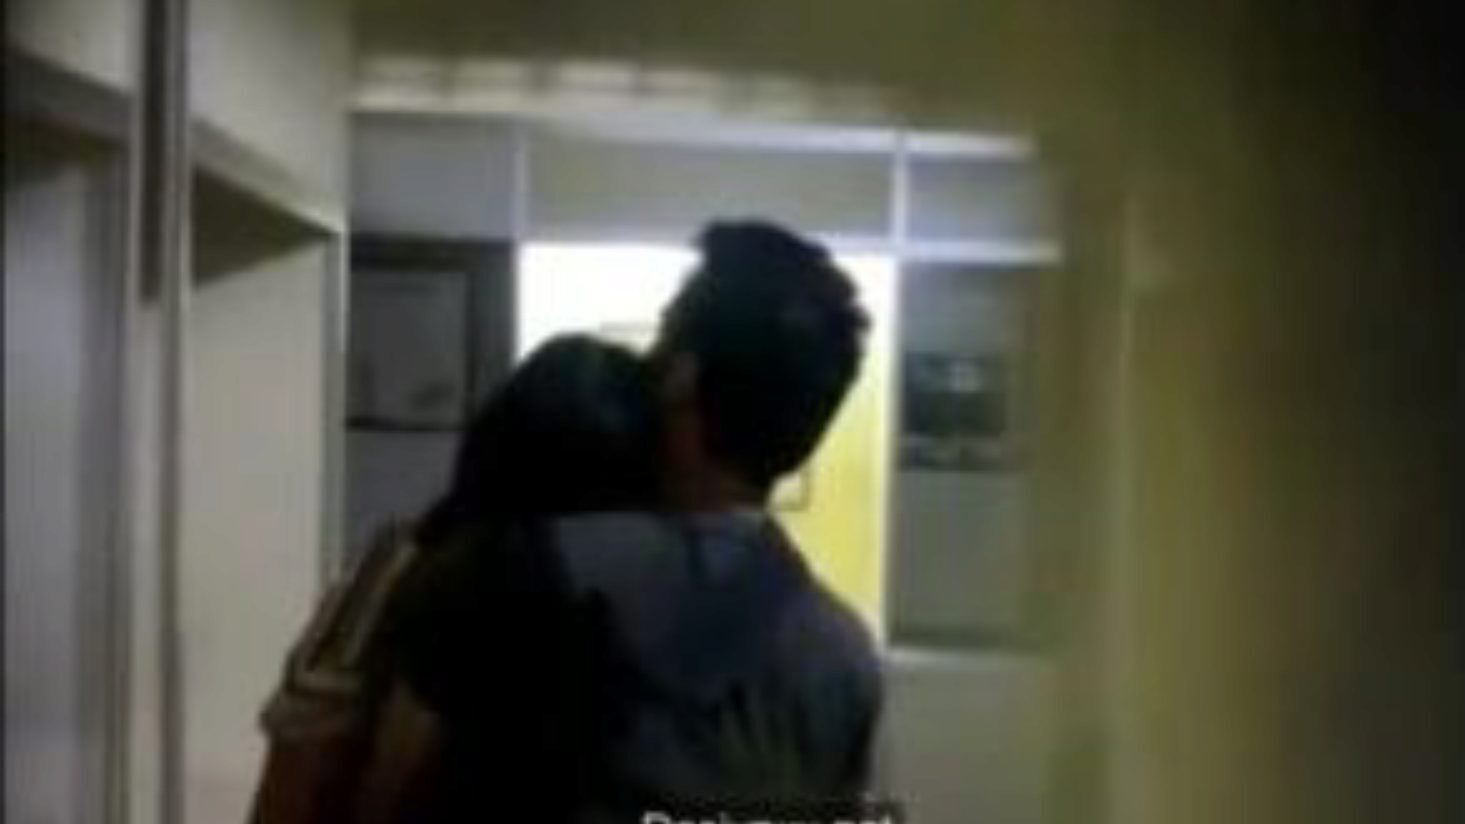 Amantes da faculdade se beijando na despensa, pornô 7a: xhamster assistir a amantes da faculdade se beijando no episódio da despensa no xhamster, o superlativamente bom recurso da web de foda-a-thon com toneladas de indianos se beijando e cenas de filmes pornôs universitários xxx